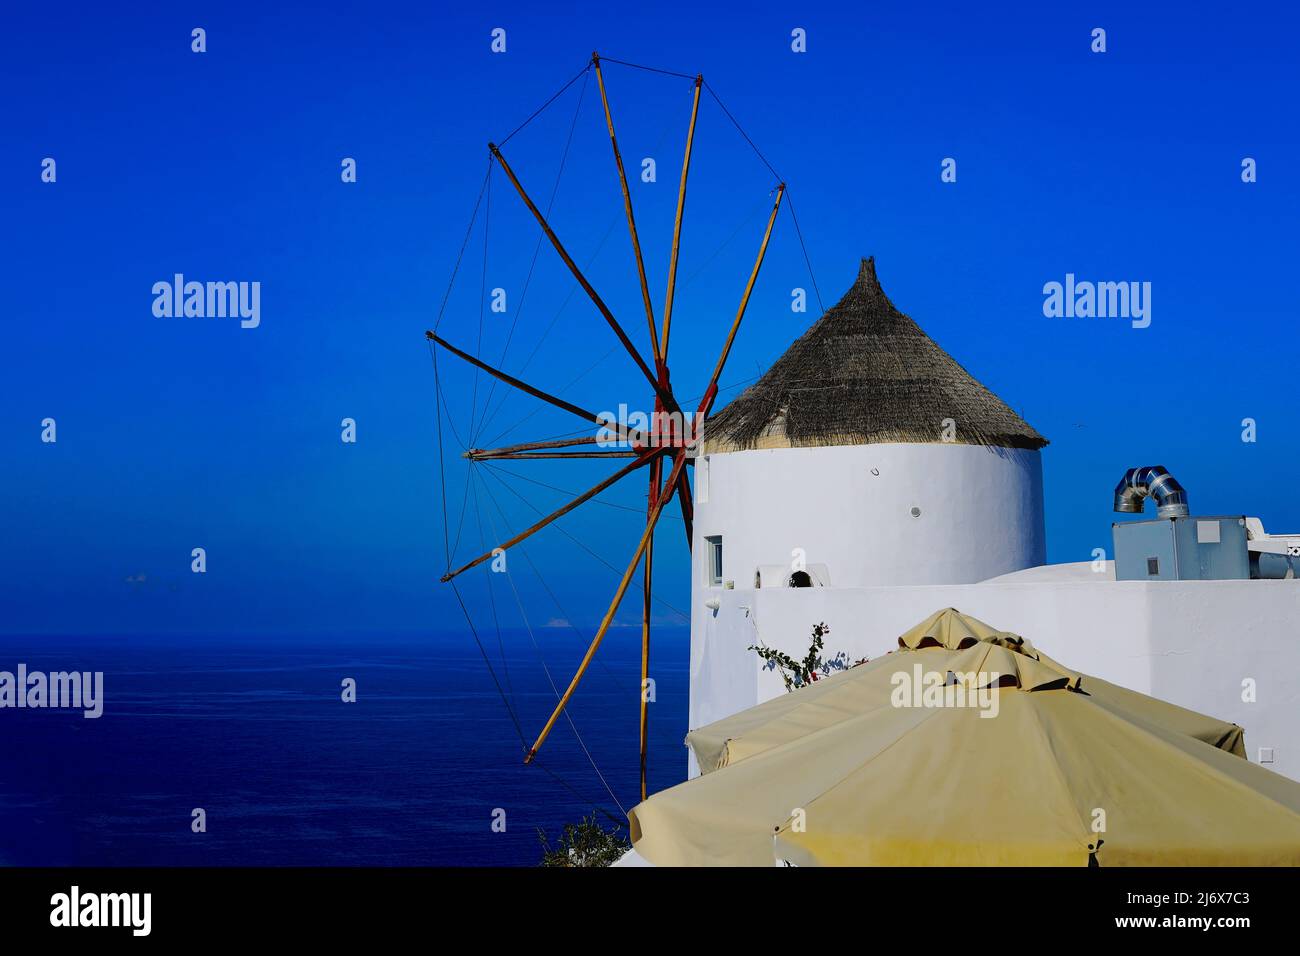 Oia, Santorini, Iles grecques, Grèce - joli moulin à vent blanchi à la chaux avec des tons de soleil en premier plan perchés sur une falaise sous un soleil éclatant Banque D'Images